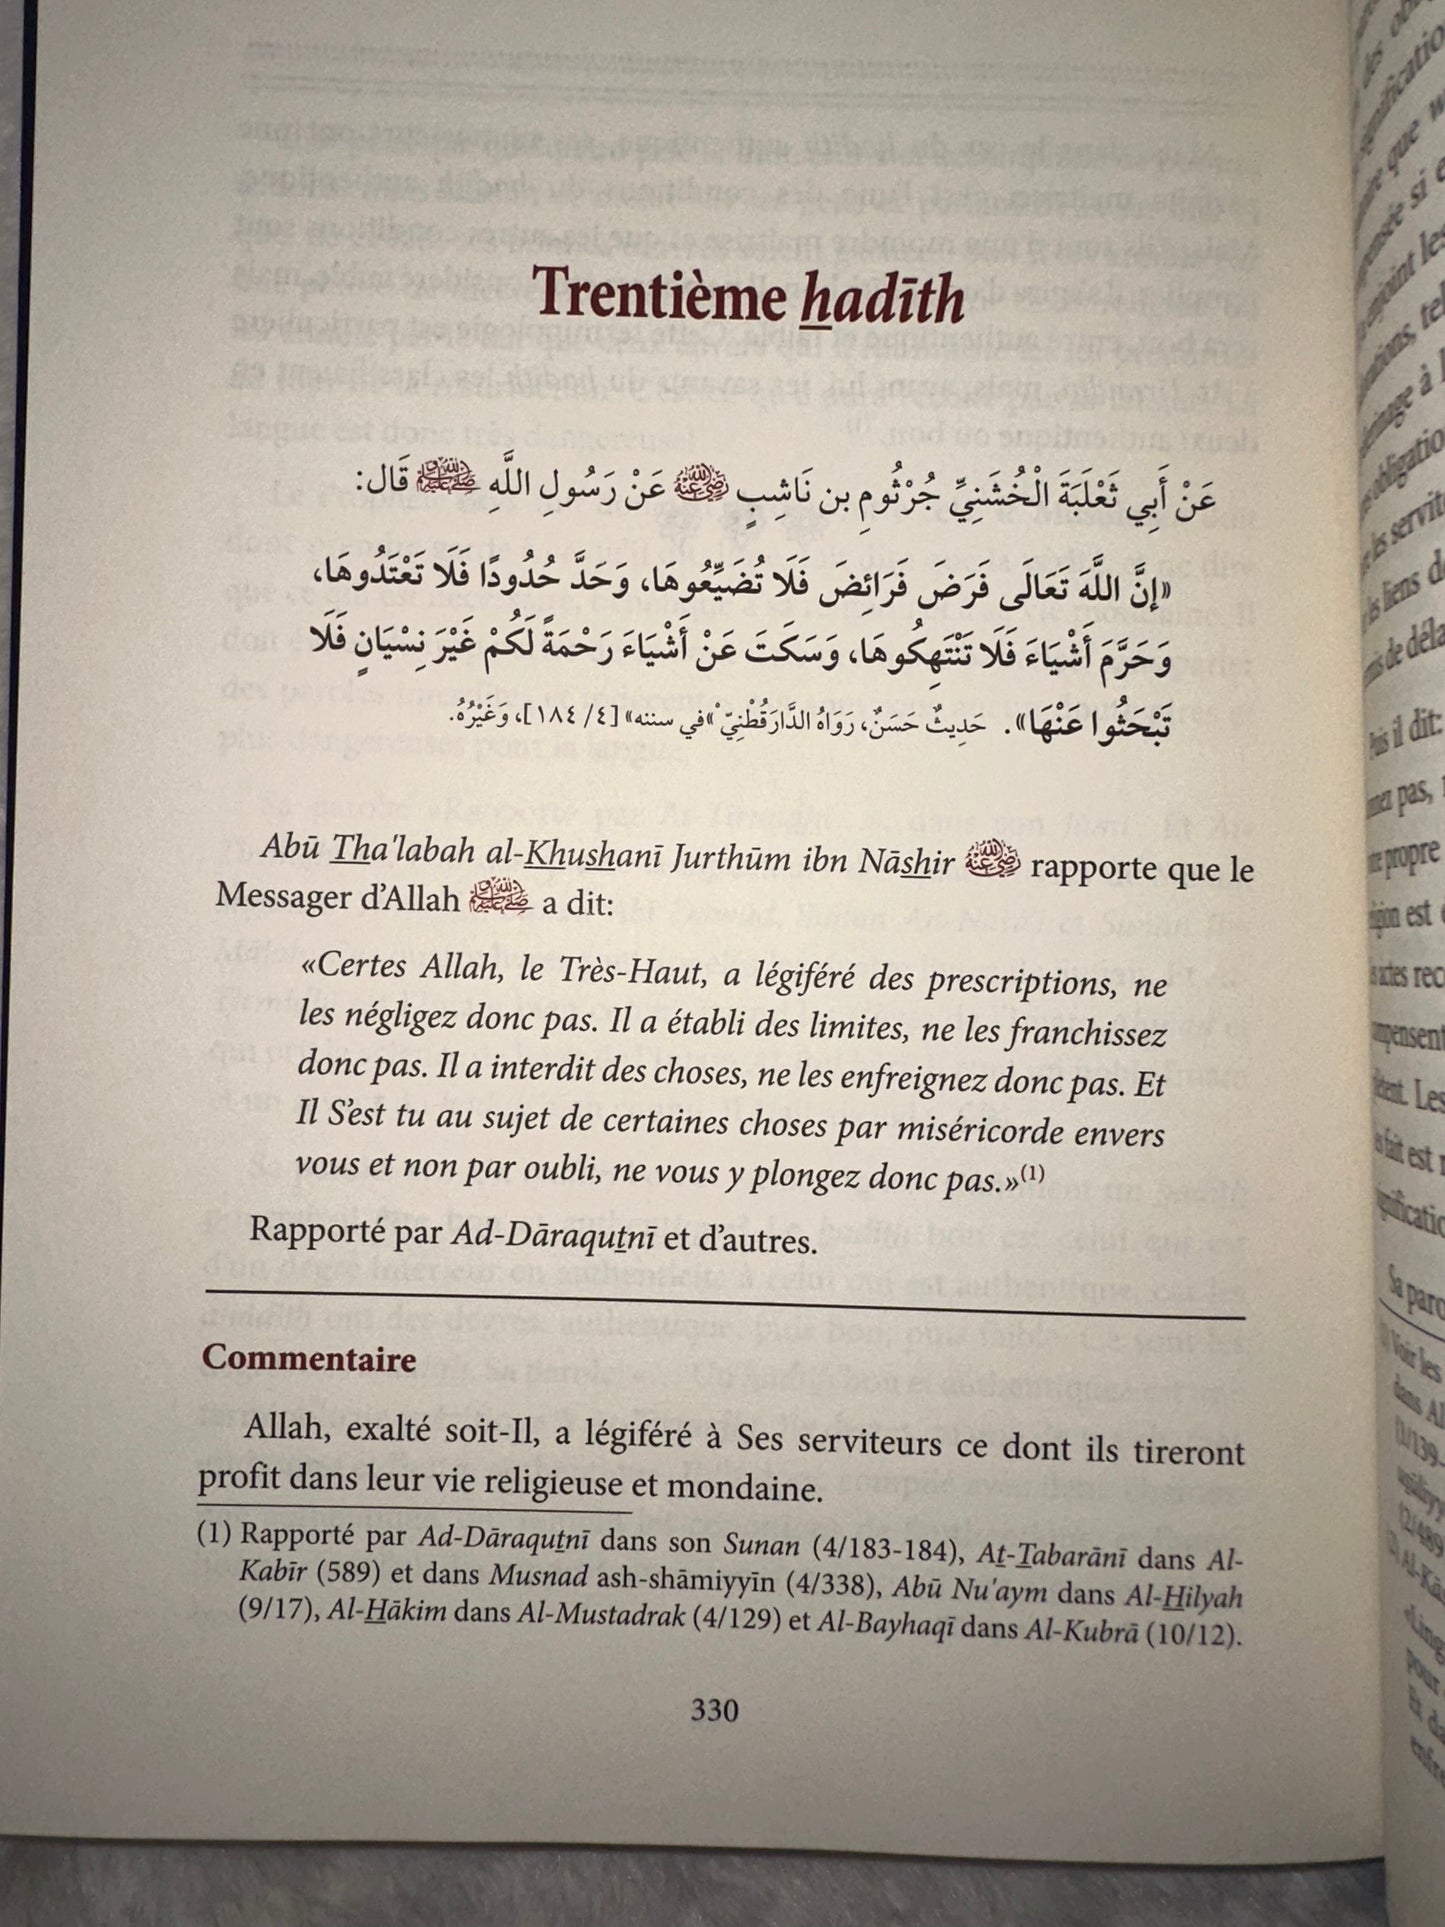 Commentaire Du Livre "40 Hadiths An-Nawawi", De L'imam An-Nawawi, Par Dr. Sâlih Al-Fawzân, Série Des Leçons Importantes (1)